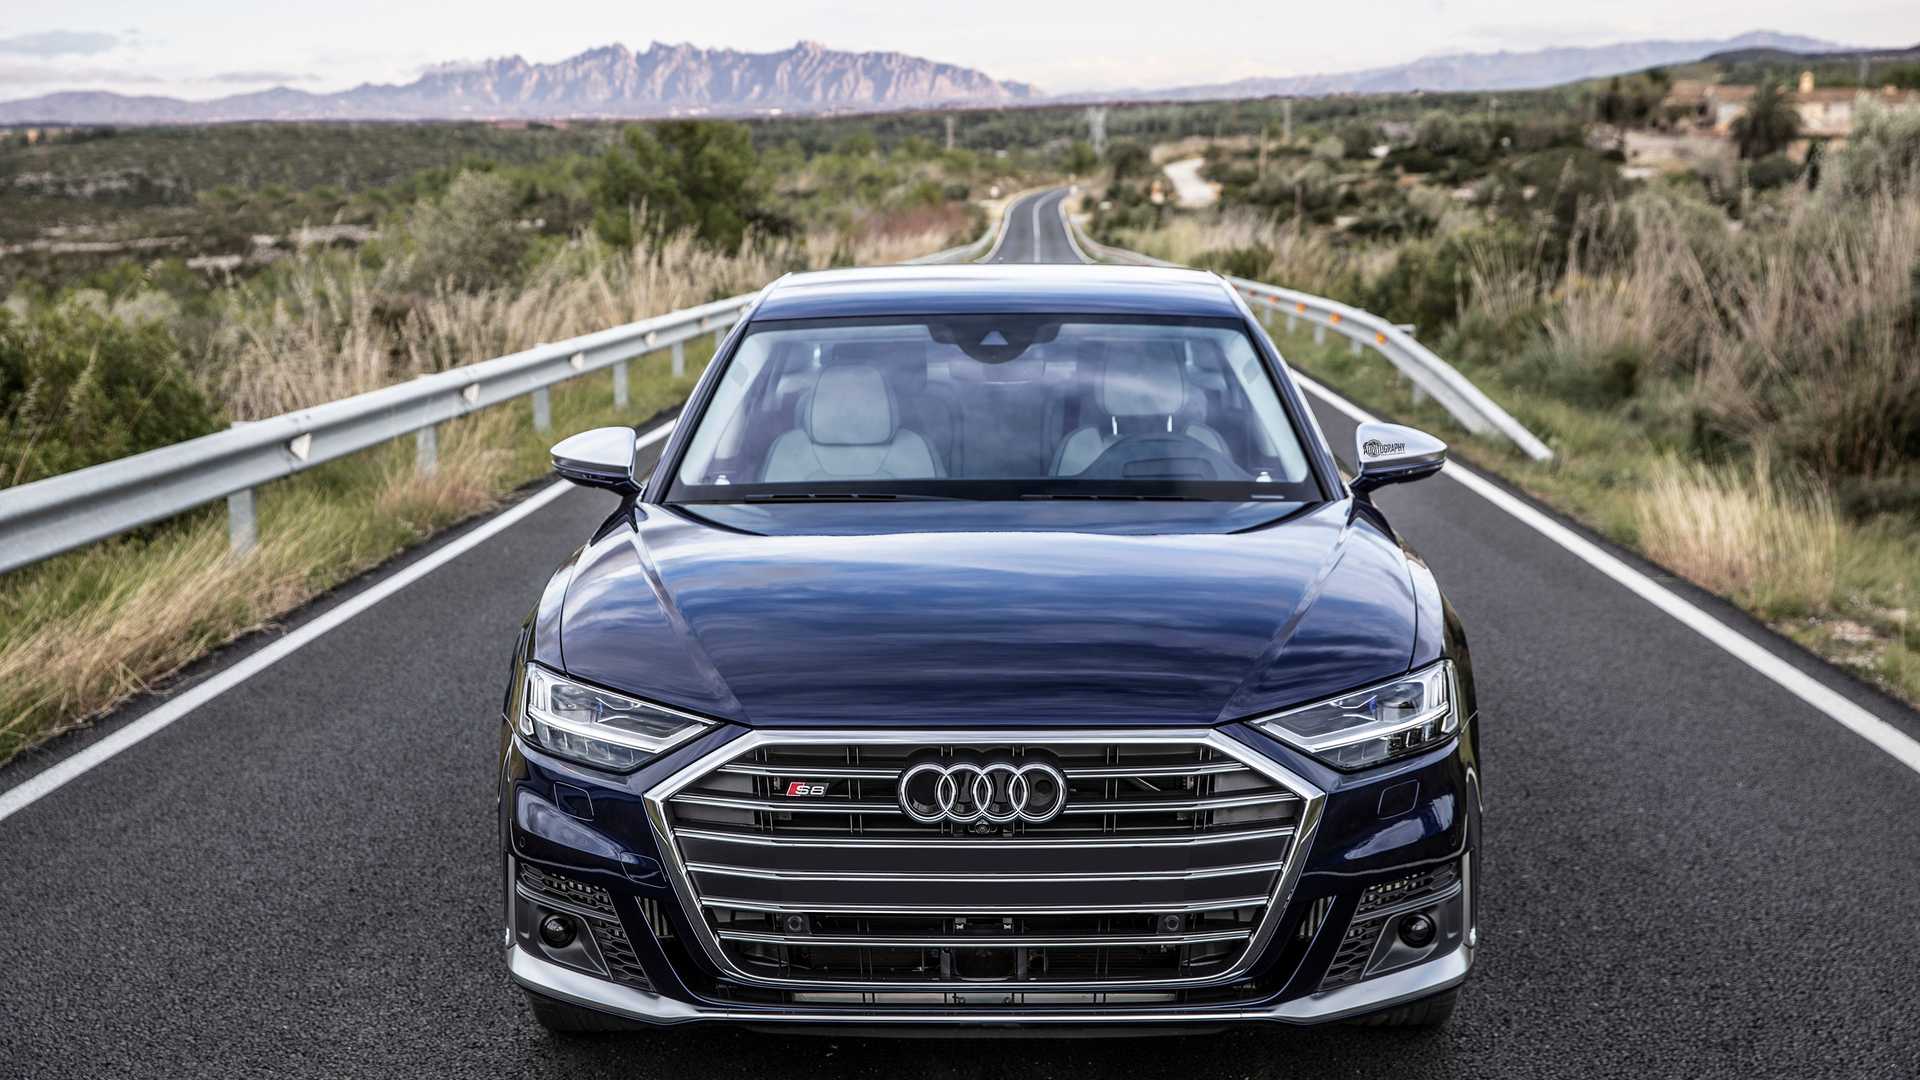 Audi sq8 2019-2020 - фото, цена и характеристики модели ауди sq8